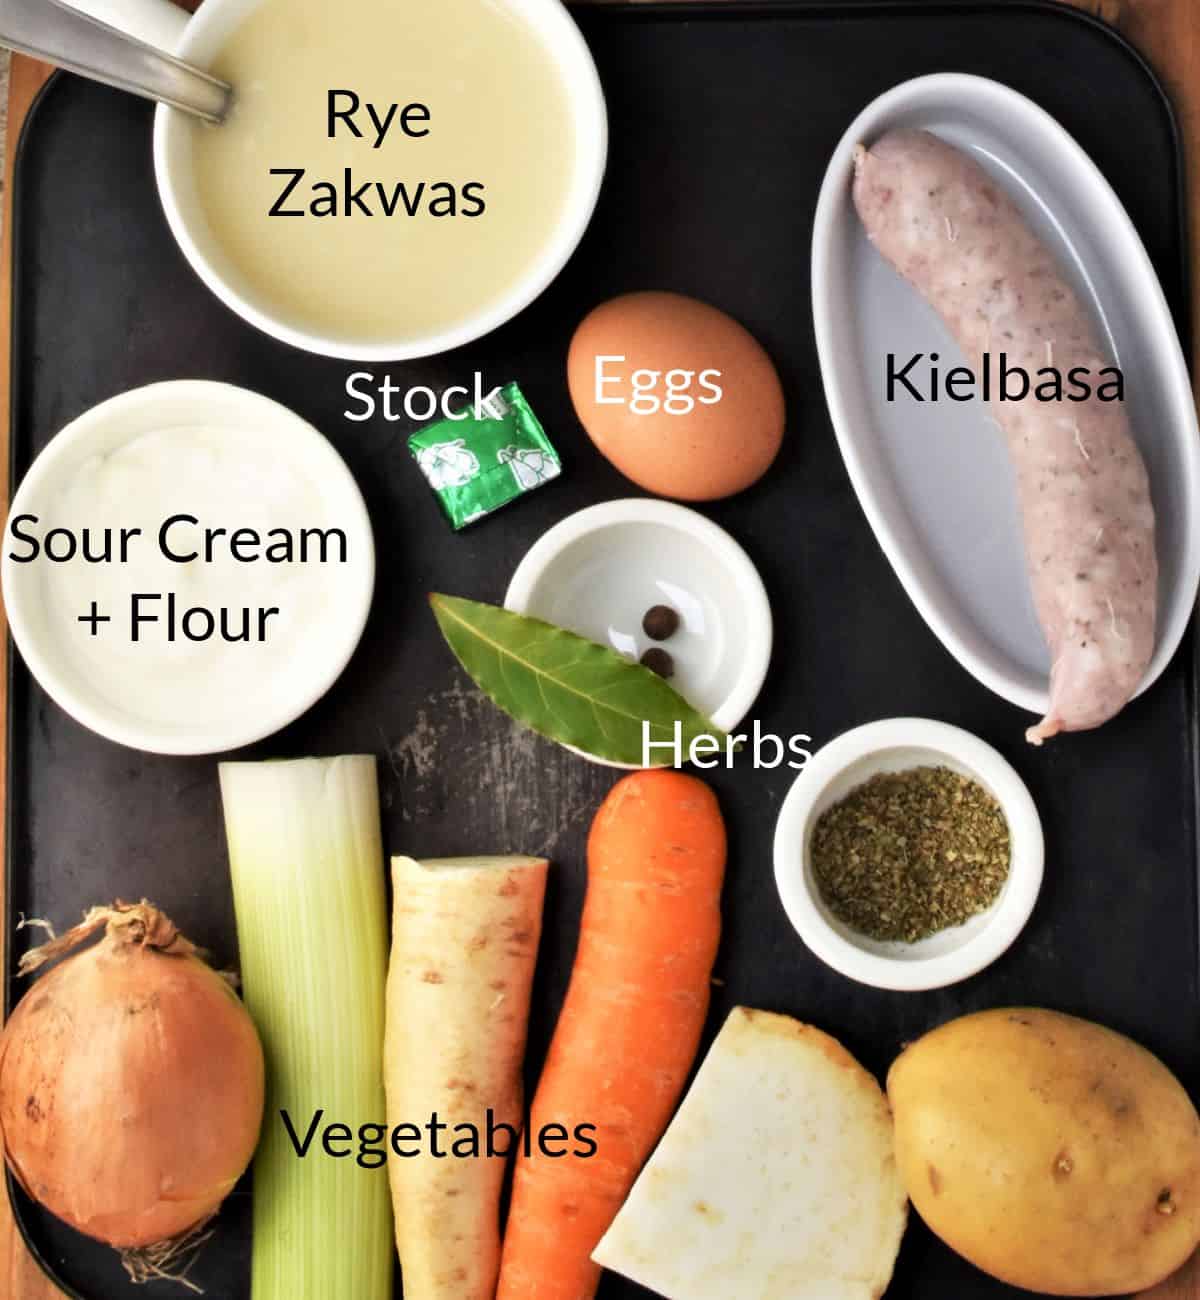 Ingredients for making zurek recipe in individual dishes.